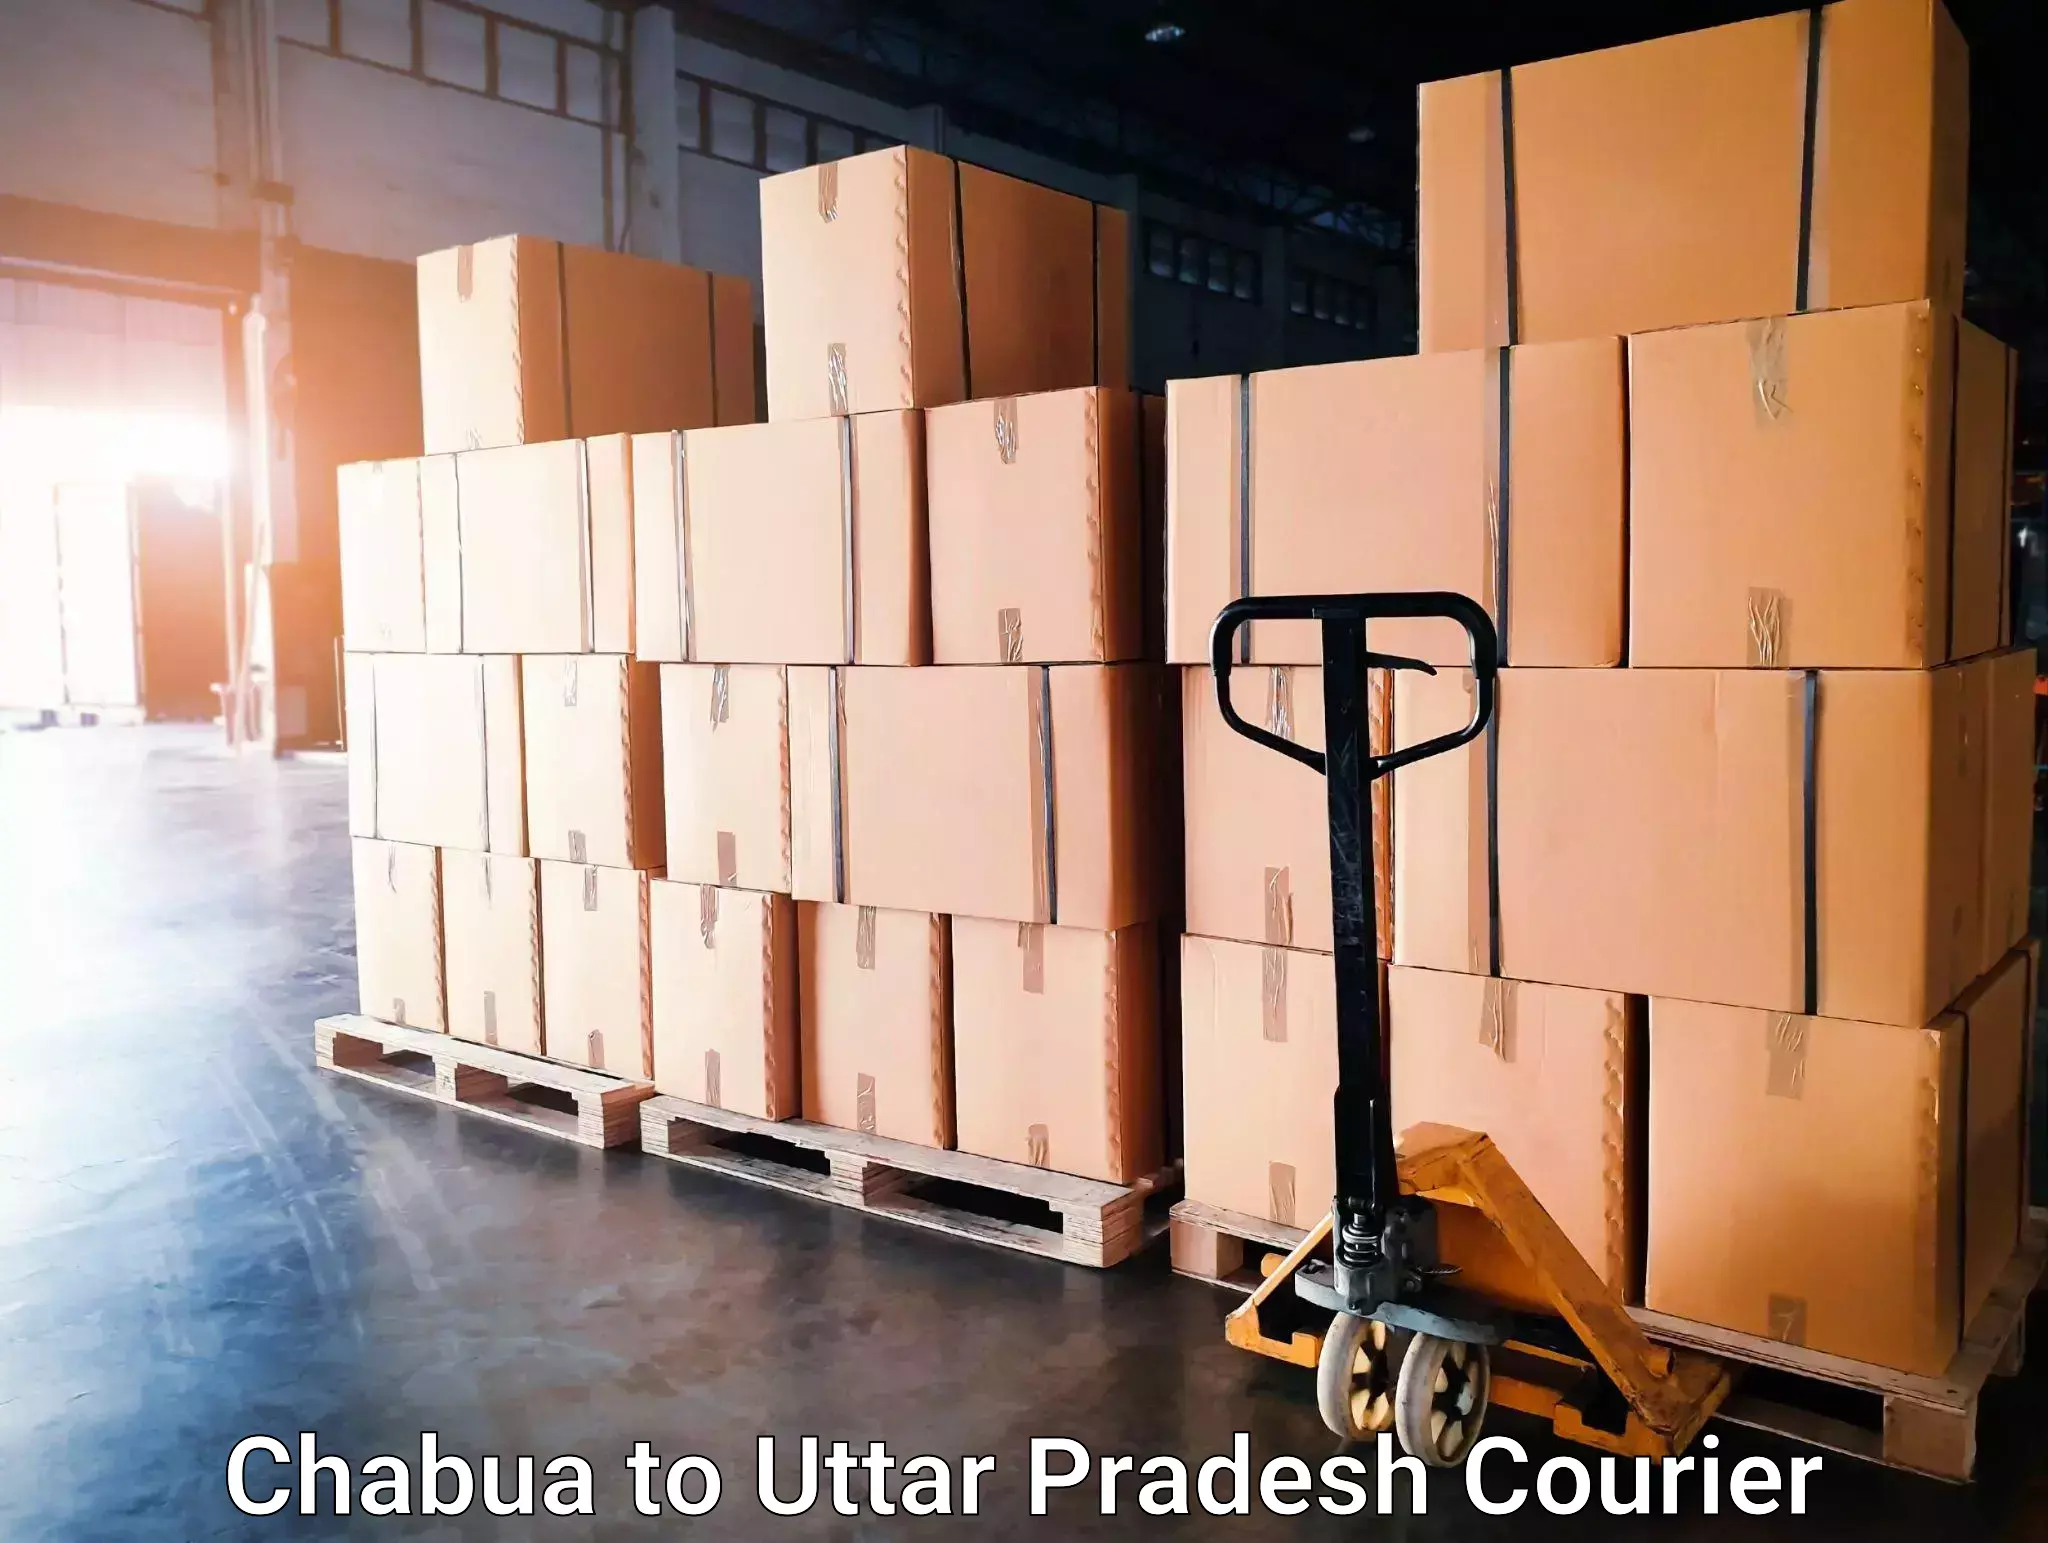 Express delivery solutions Chabua to Thakurdwara